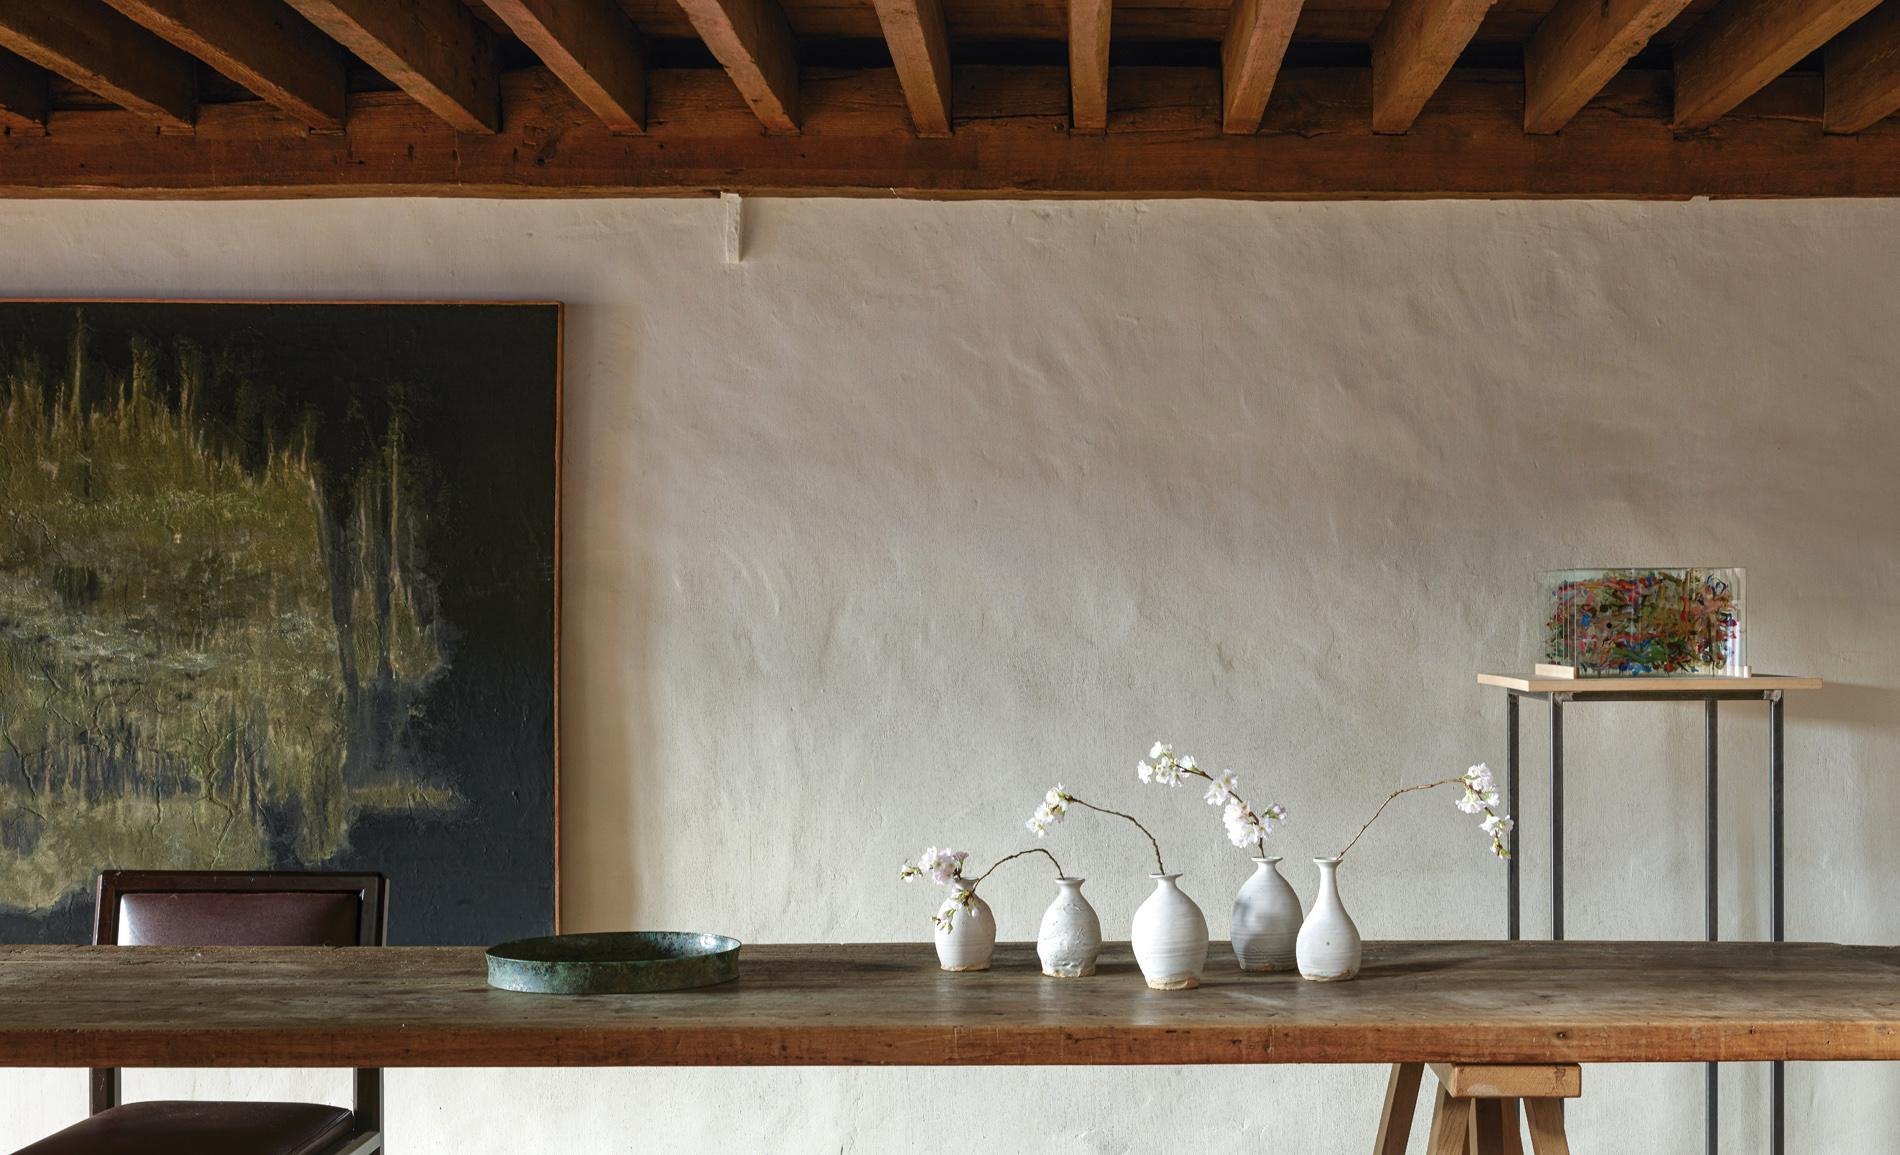 Espacio del diseñador Axel Vervoord con a¡paredes blancas y rugosas y vigas de madera